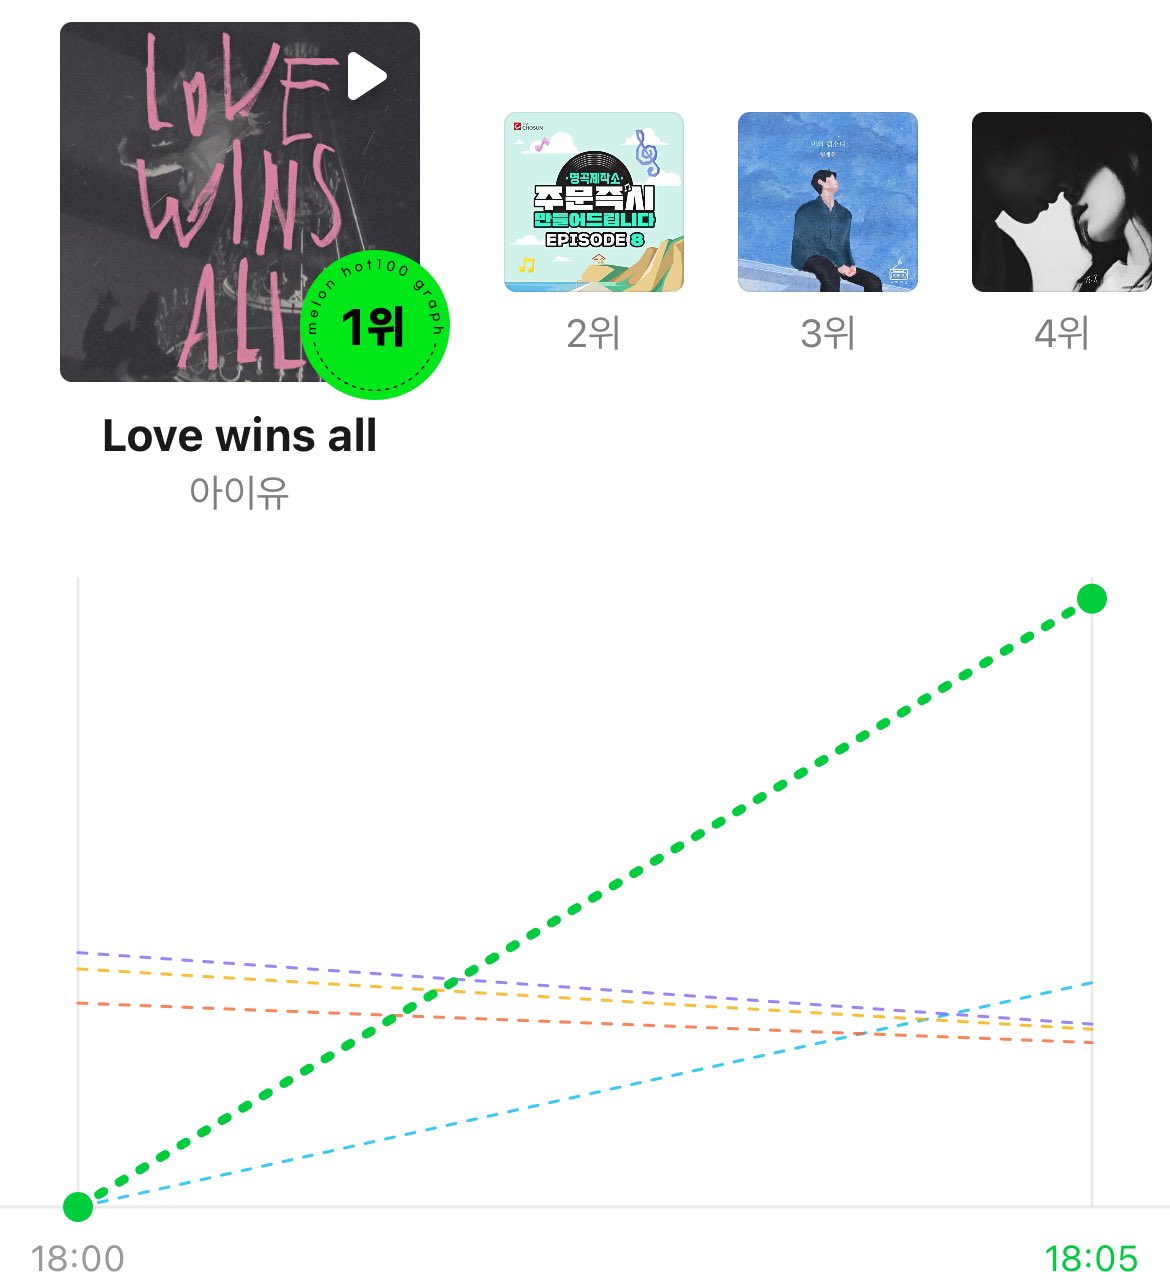 Kpop Charts on X: MelOn 5 Minute Chart: #1 IU - Love wins all